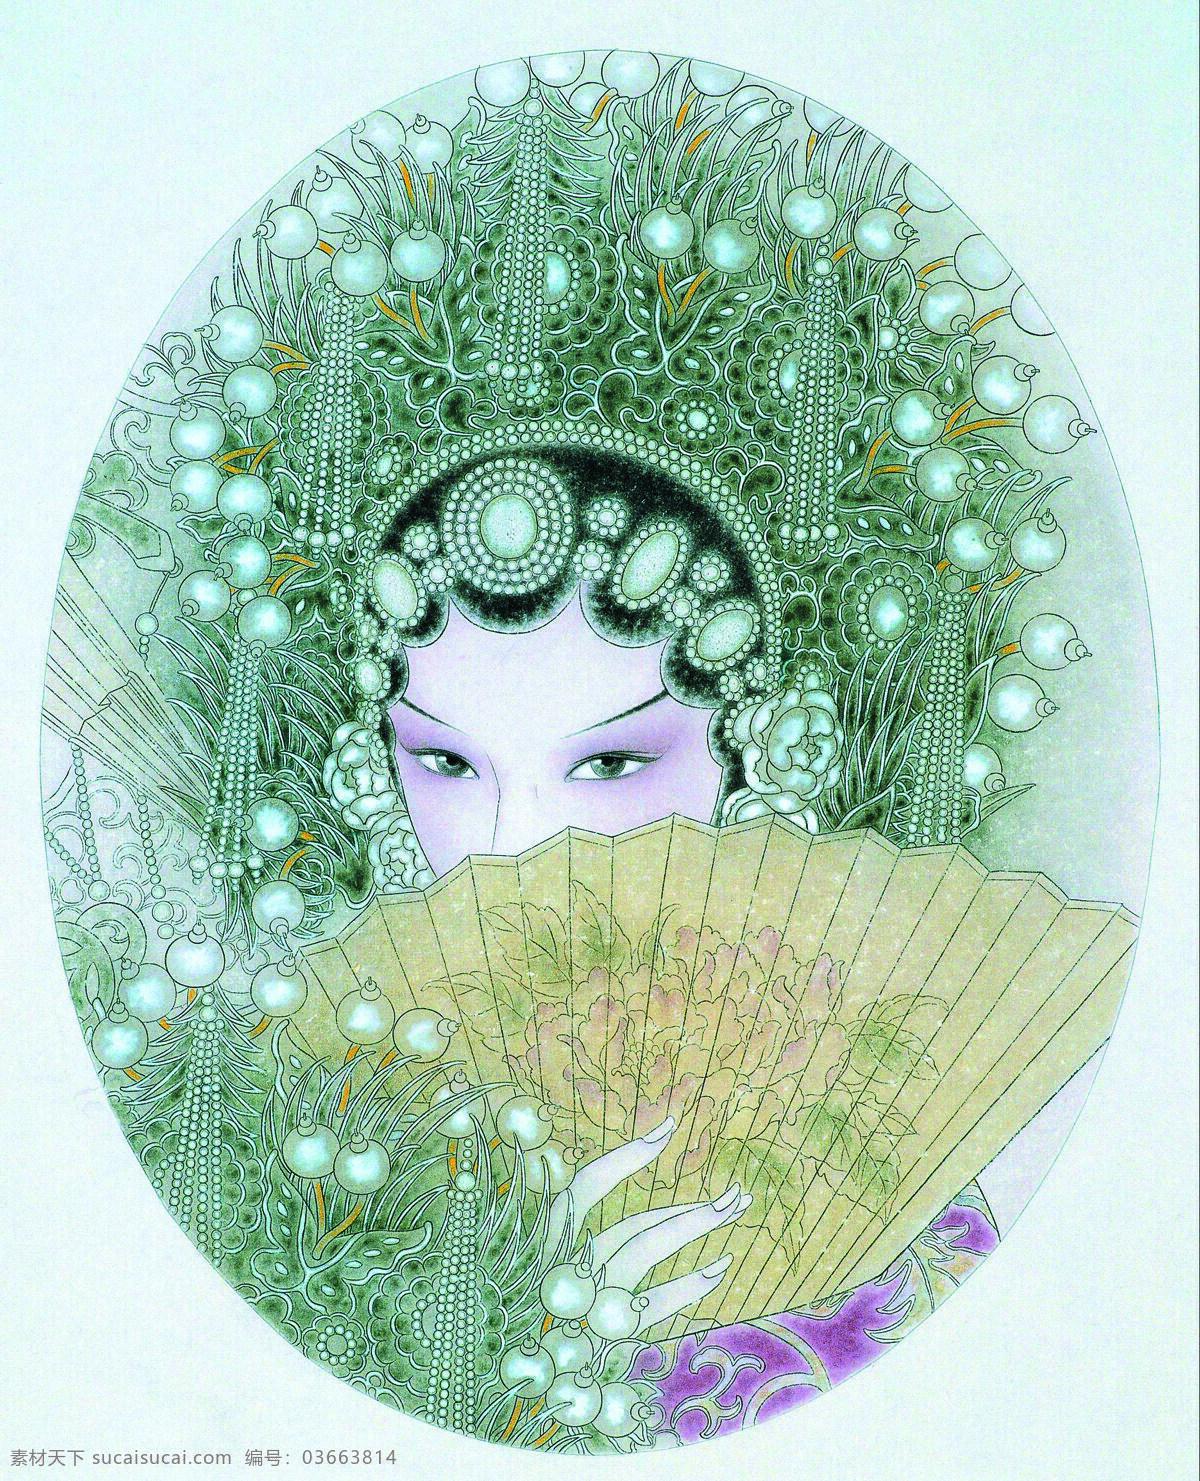 付洛红人物画 美术 中国画 工笔画 人物画 女人 女子 戏曲人物 旦角 文化艺术 绘画书法